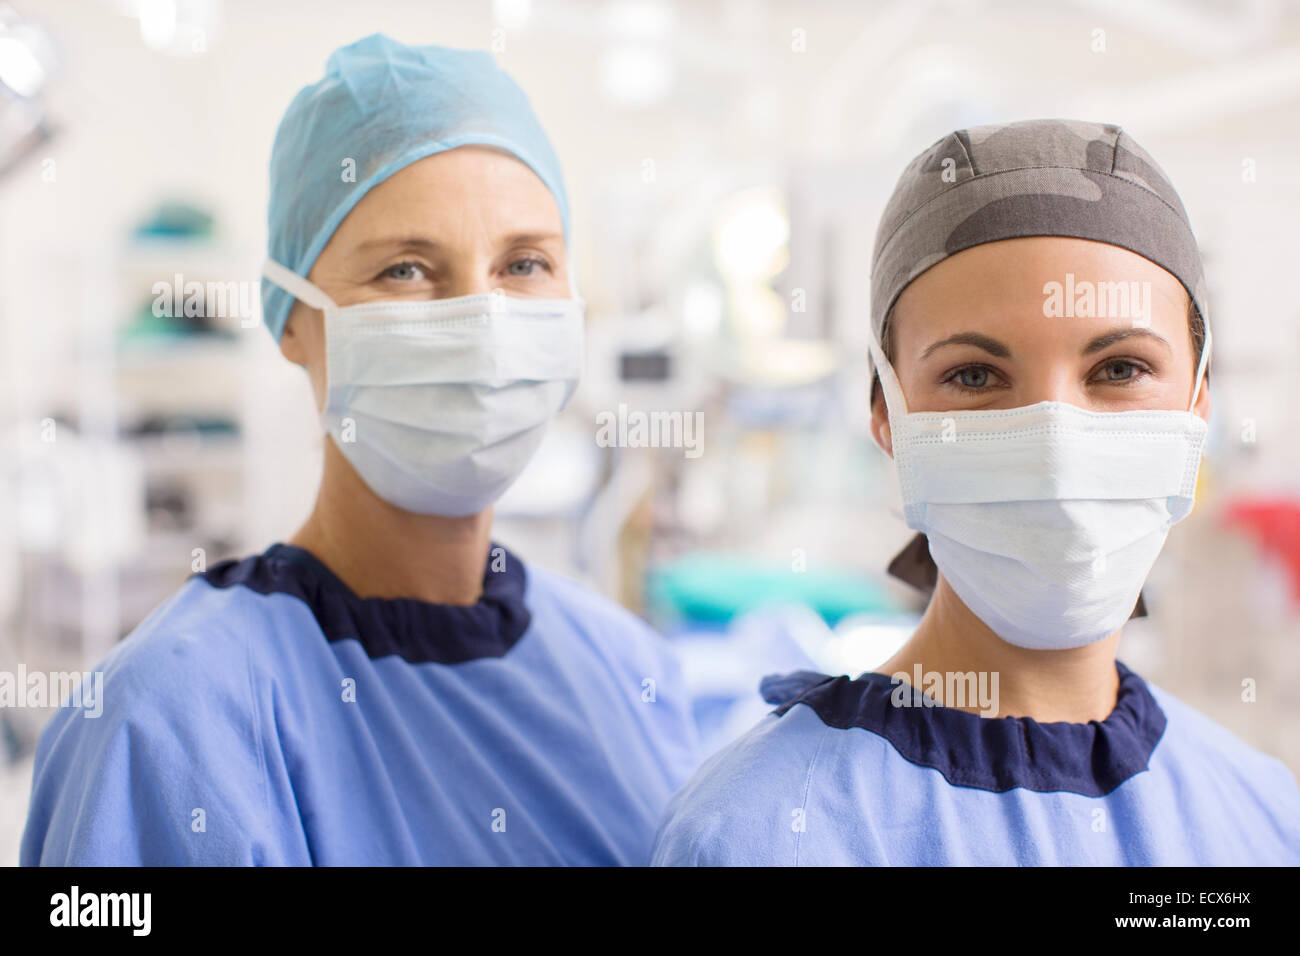 Ritratto di medici di sesso femminile che indossa scrubs in sala operatoria Foto Stock